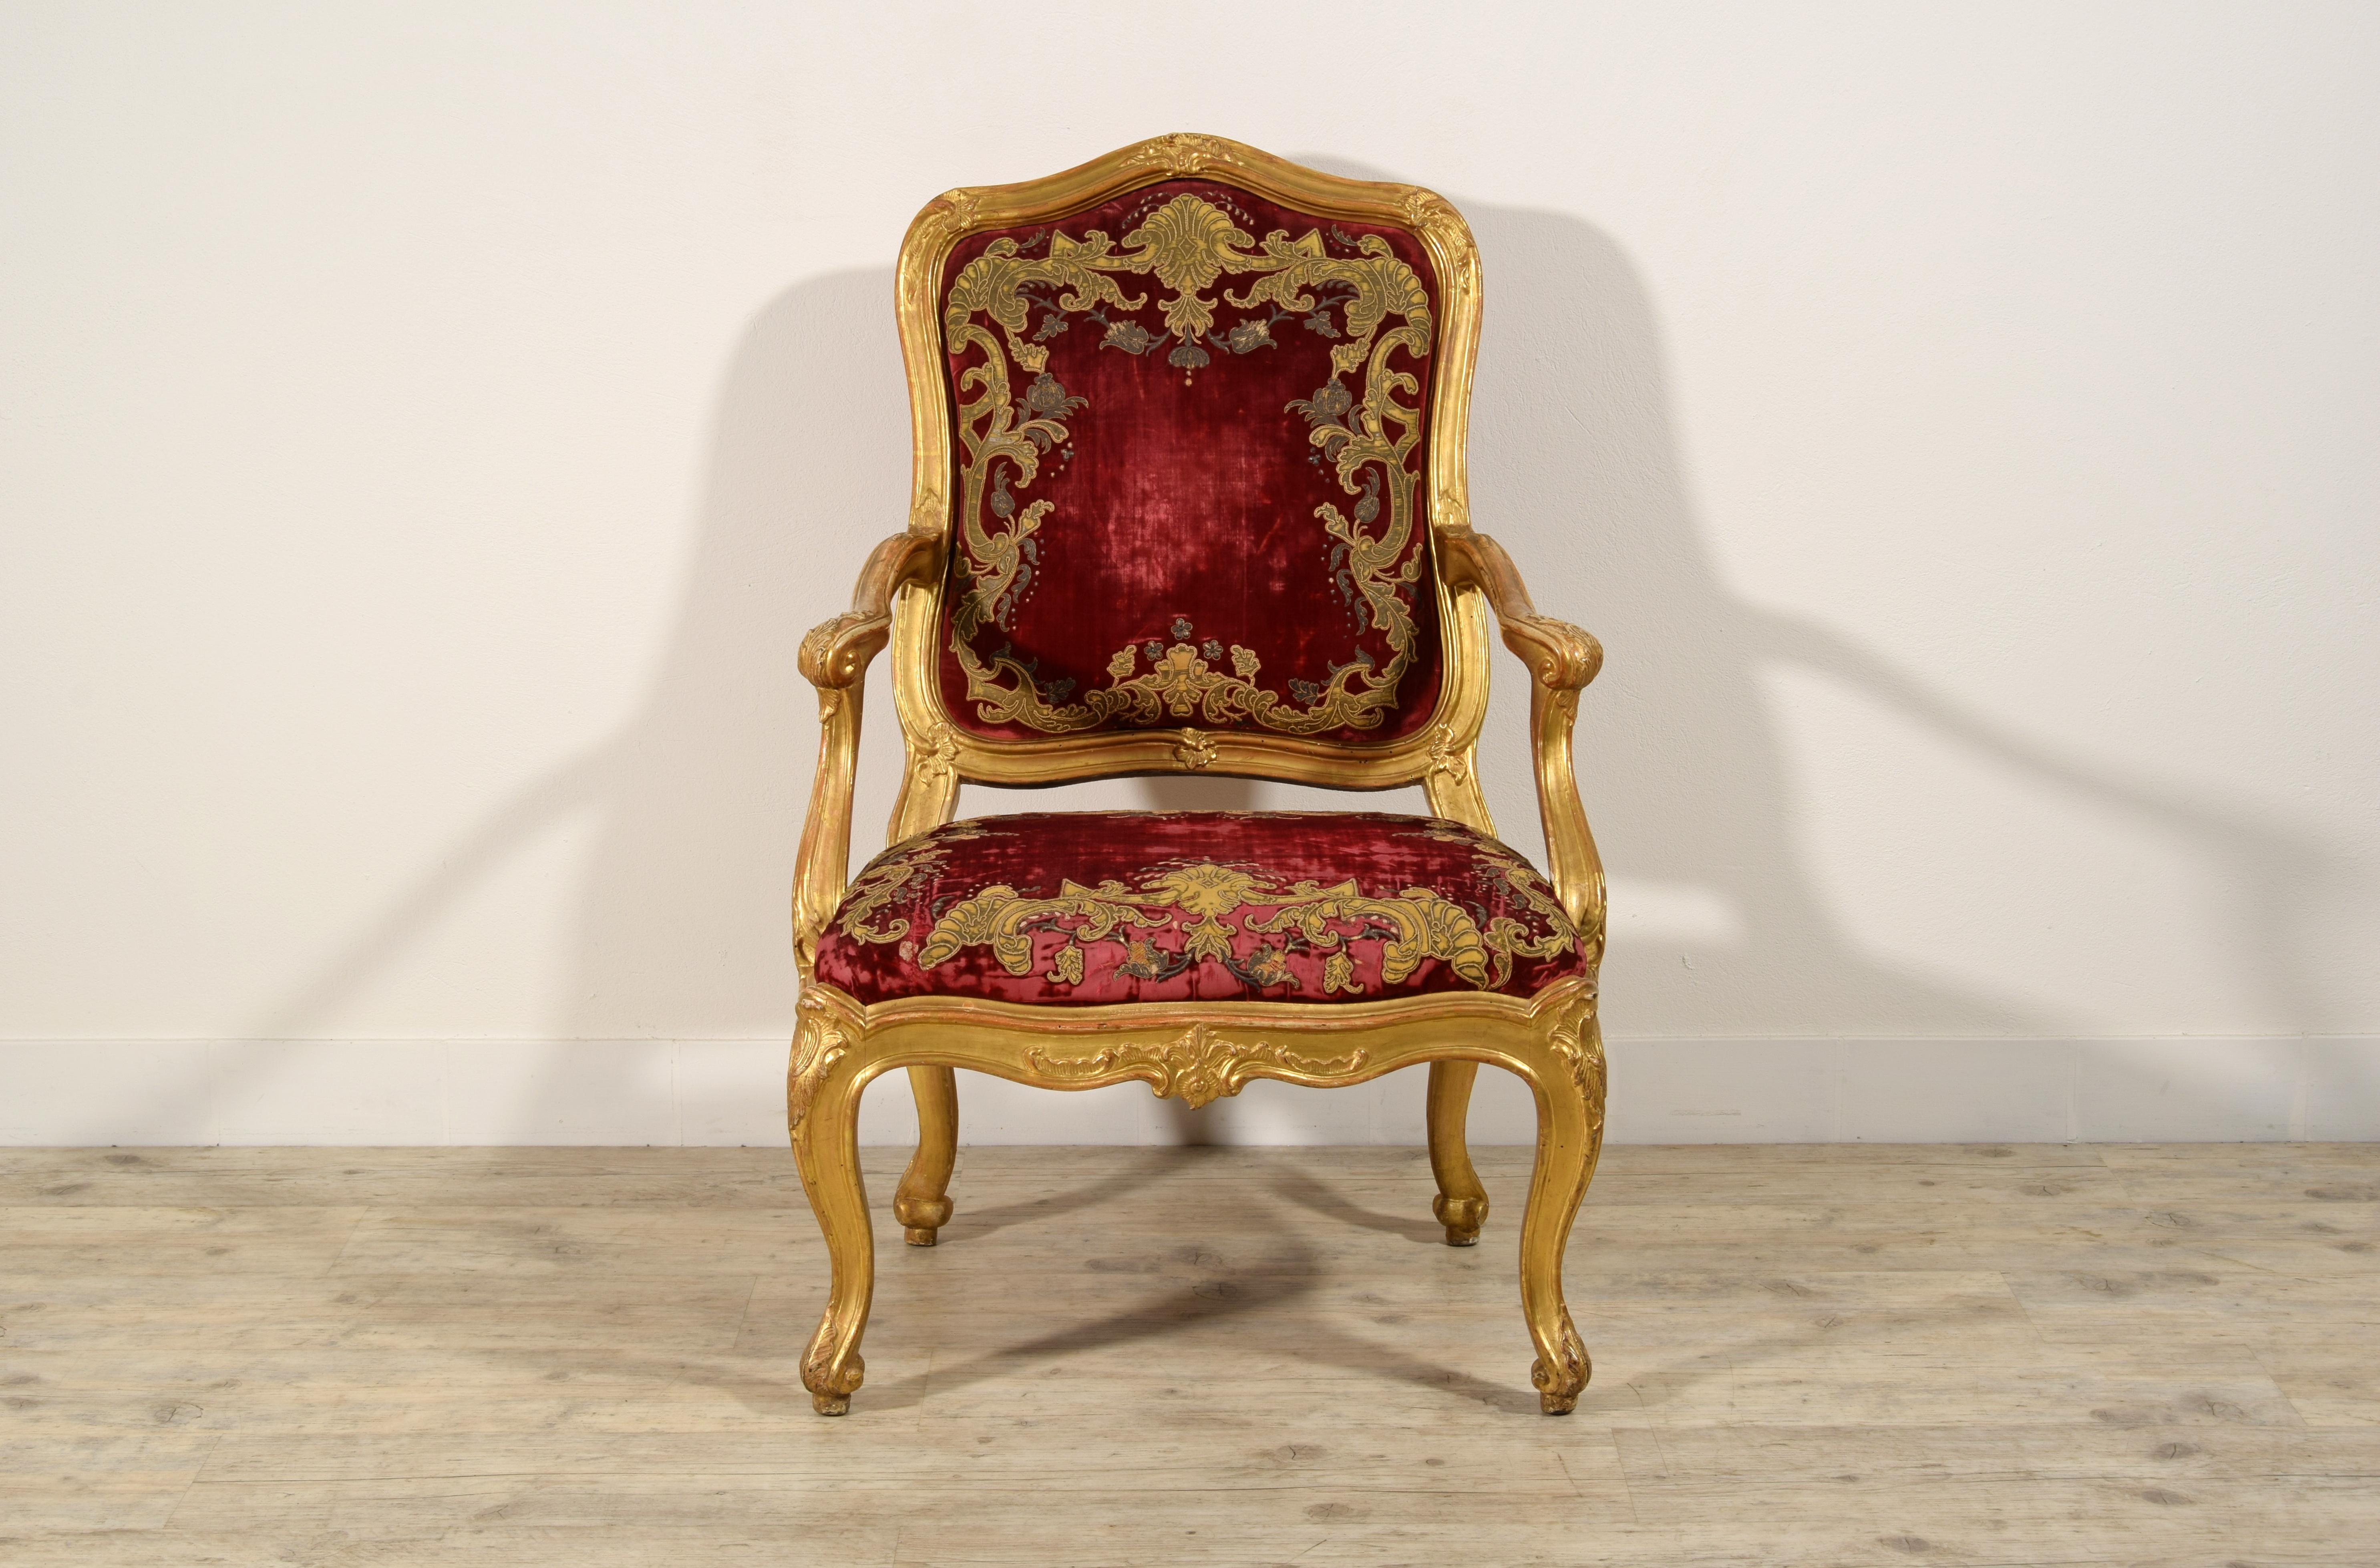 18. Jahrhundert, Italienischer Louis XV Sessel aus geschnitztem Giltwood
Maße: cm H 108 x B 73 x T 77, Sitz H 46 x T 51 x B 61
Der prächtige große Sessel aus fein geschnitztem und vergoldetem Holz stammt aus Genua, aus der Zeit Ludwigs XV. in der